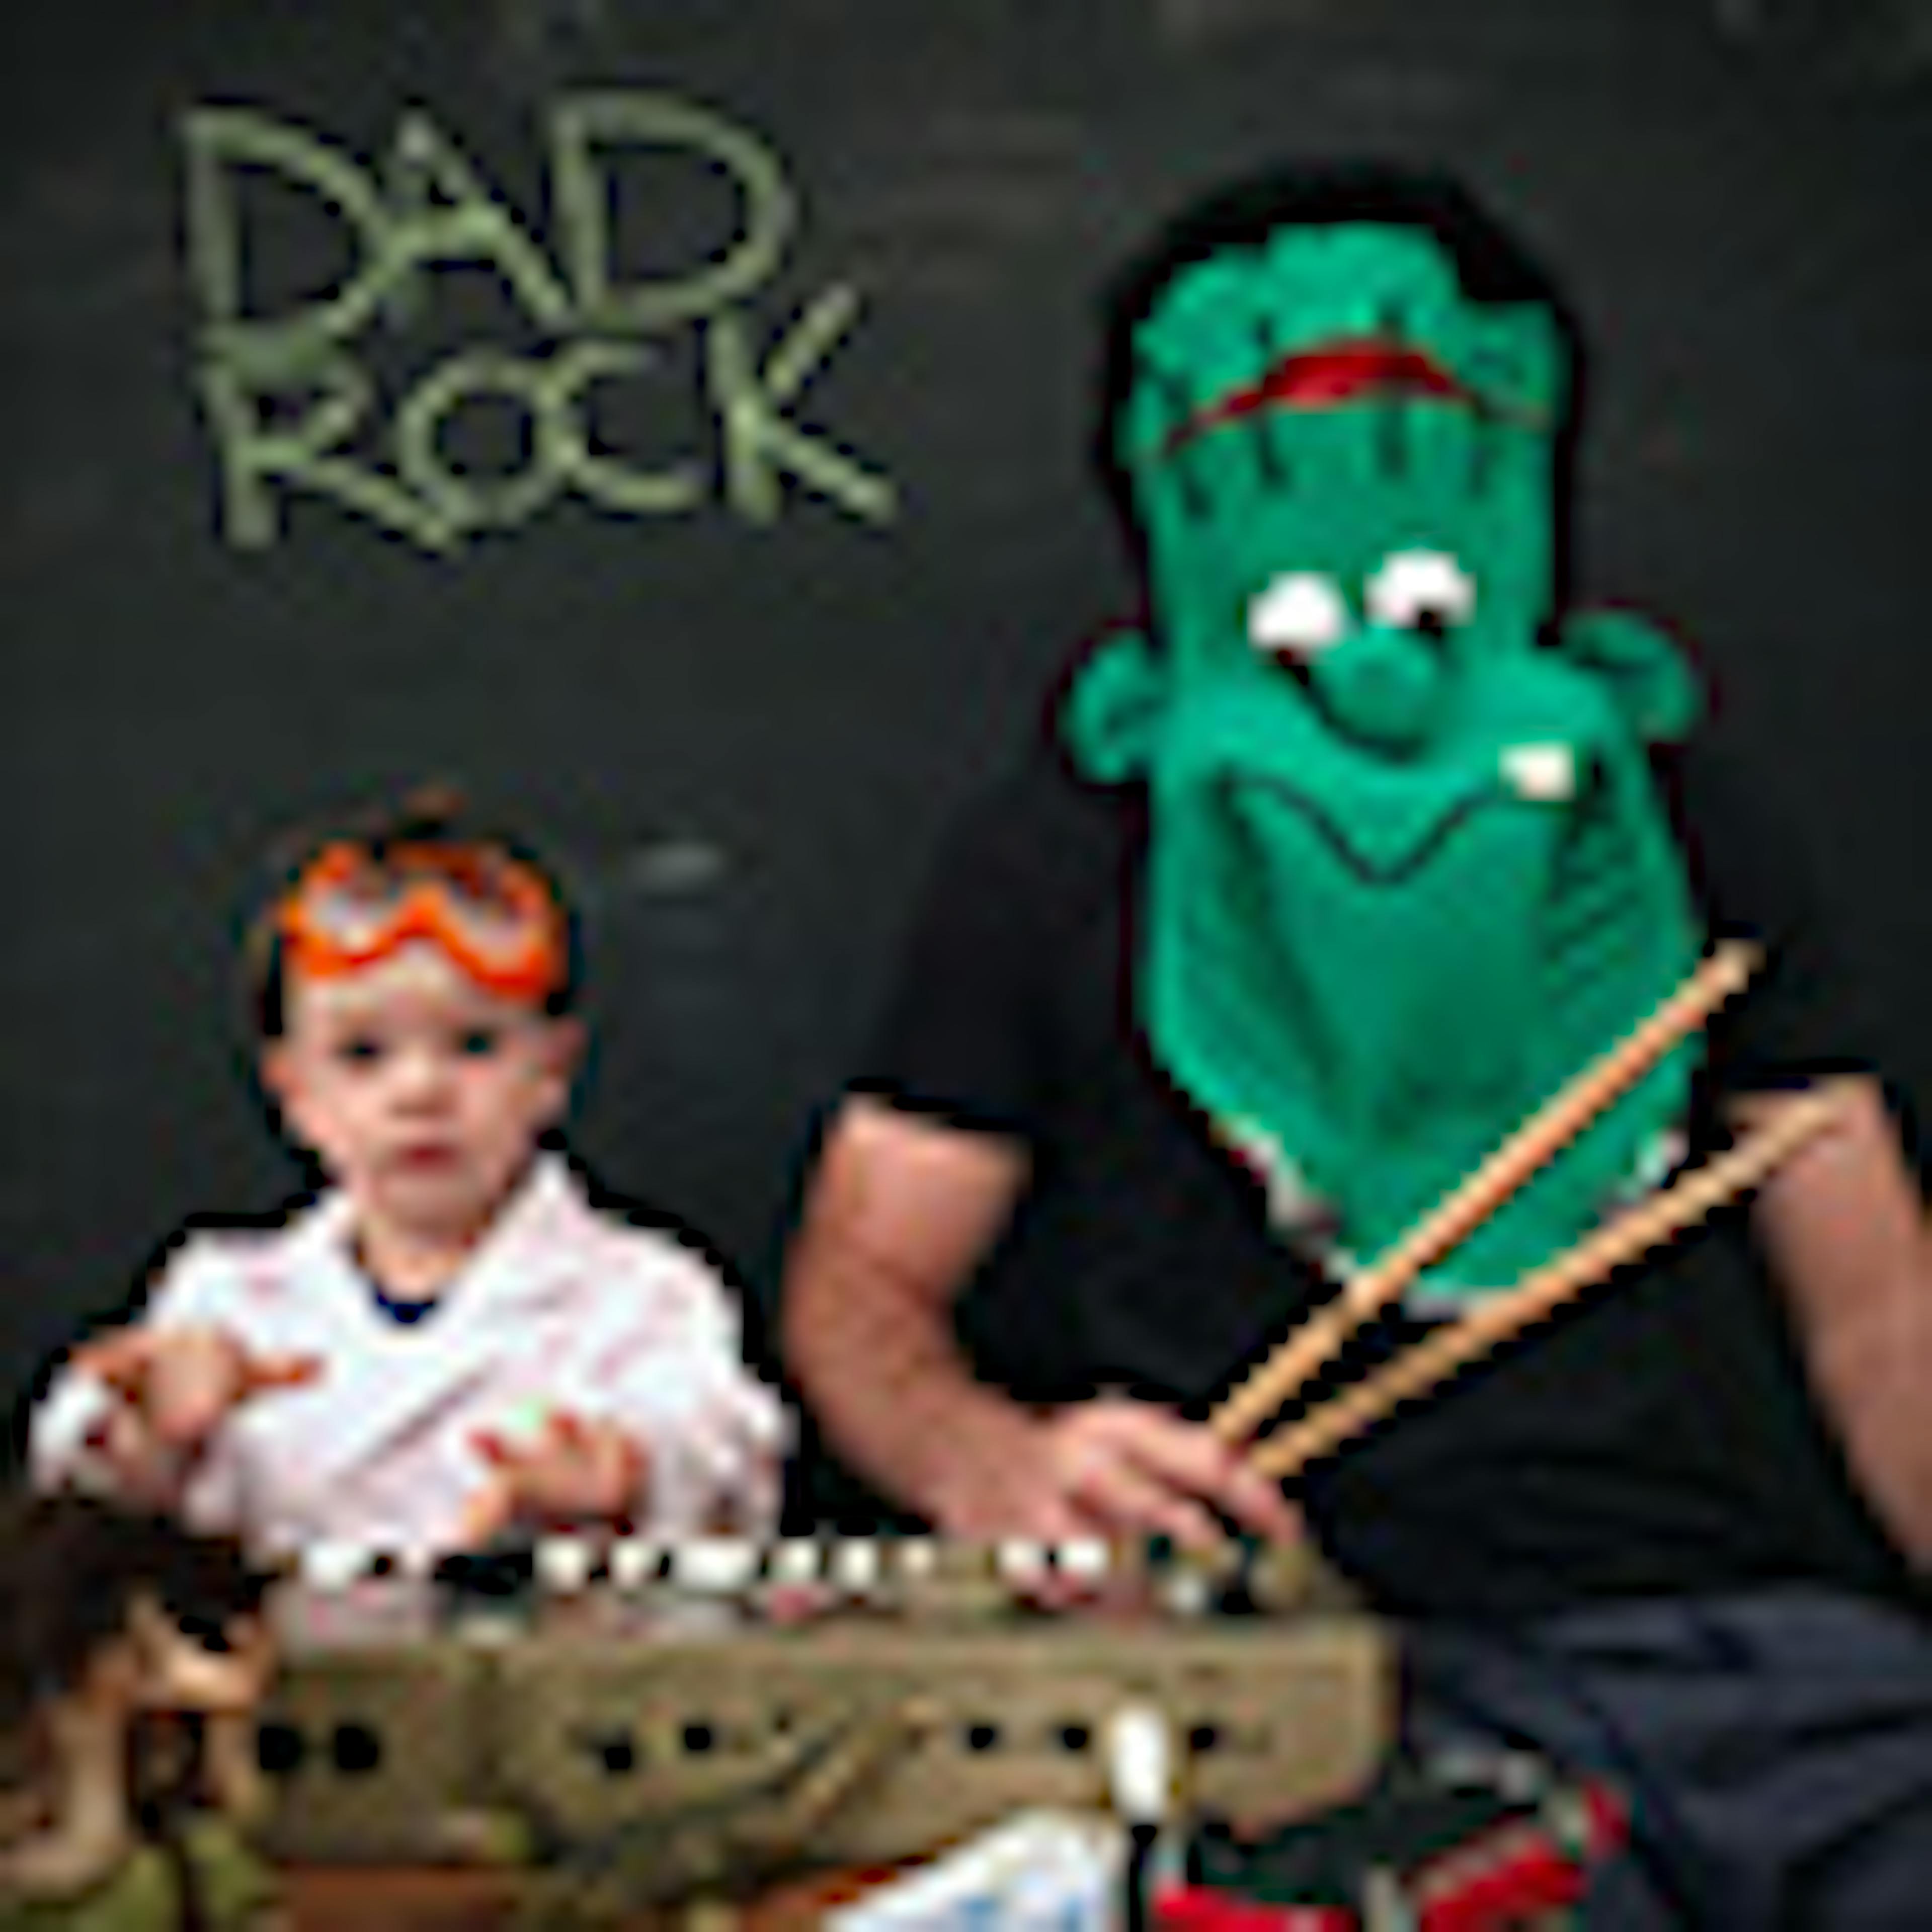 Dad Rock album cover